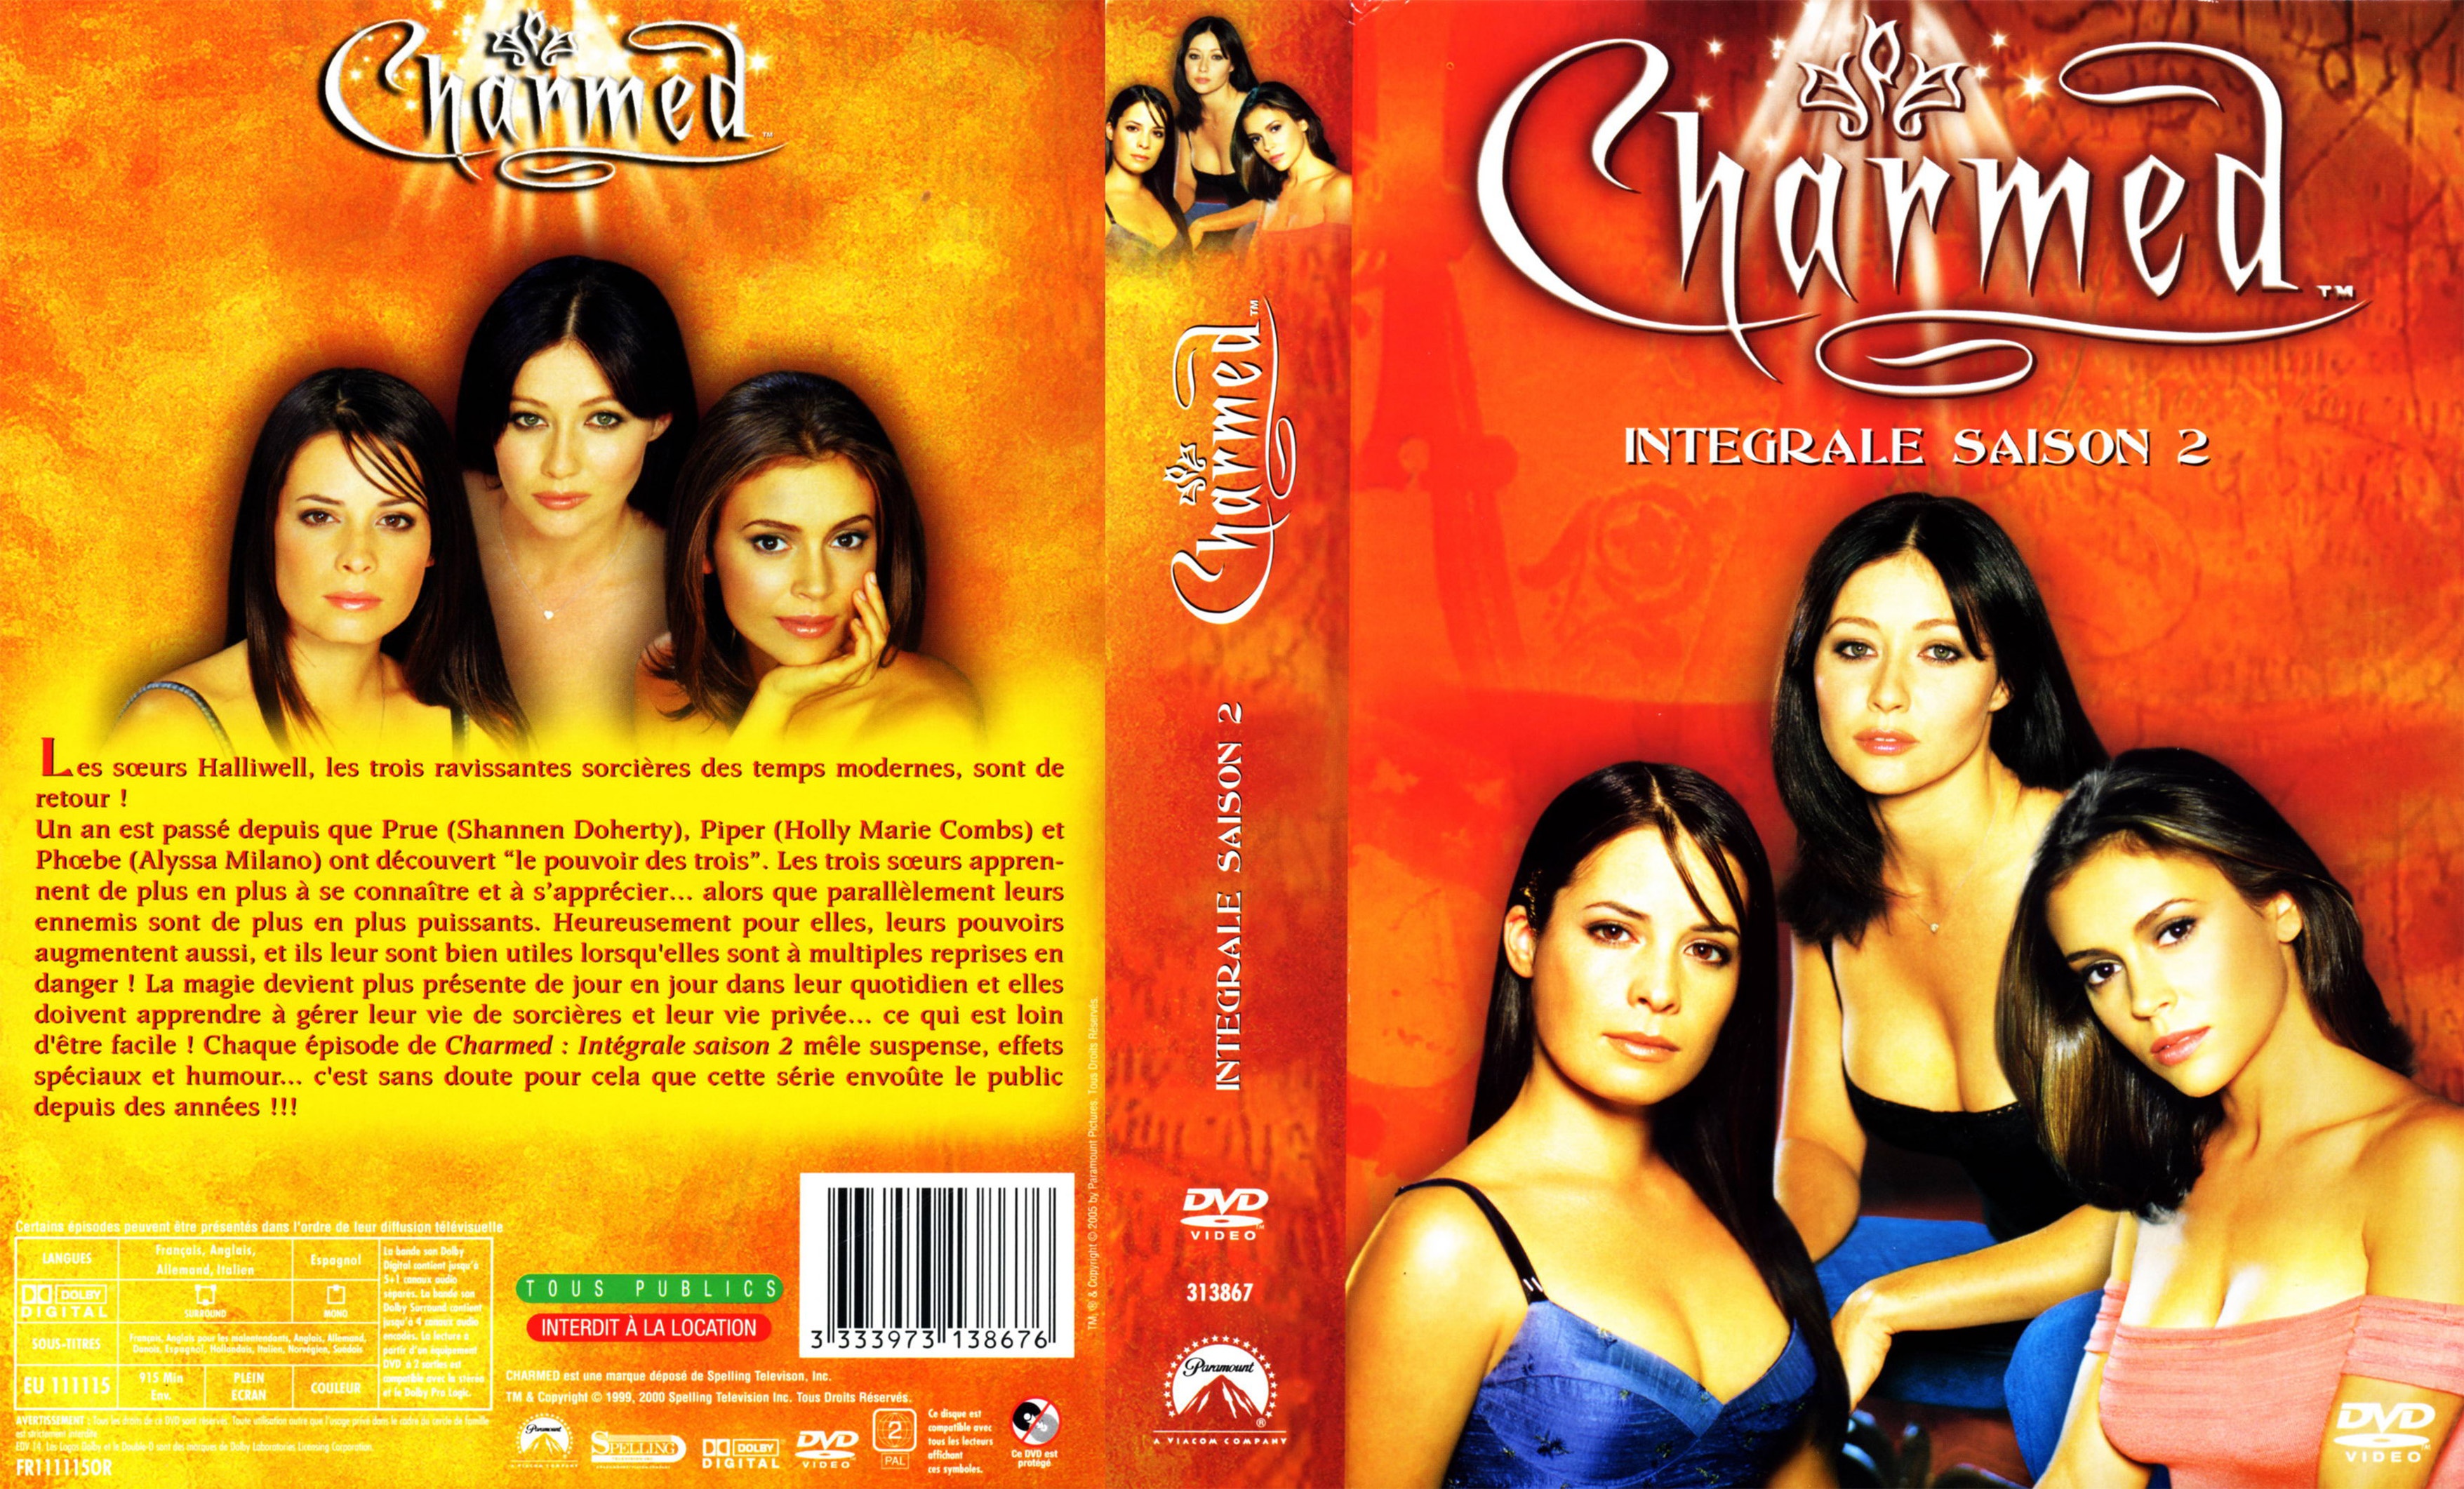 Jaquette DVD Charmed Saison 2 COFFRET v2